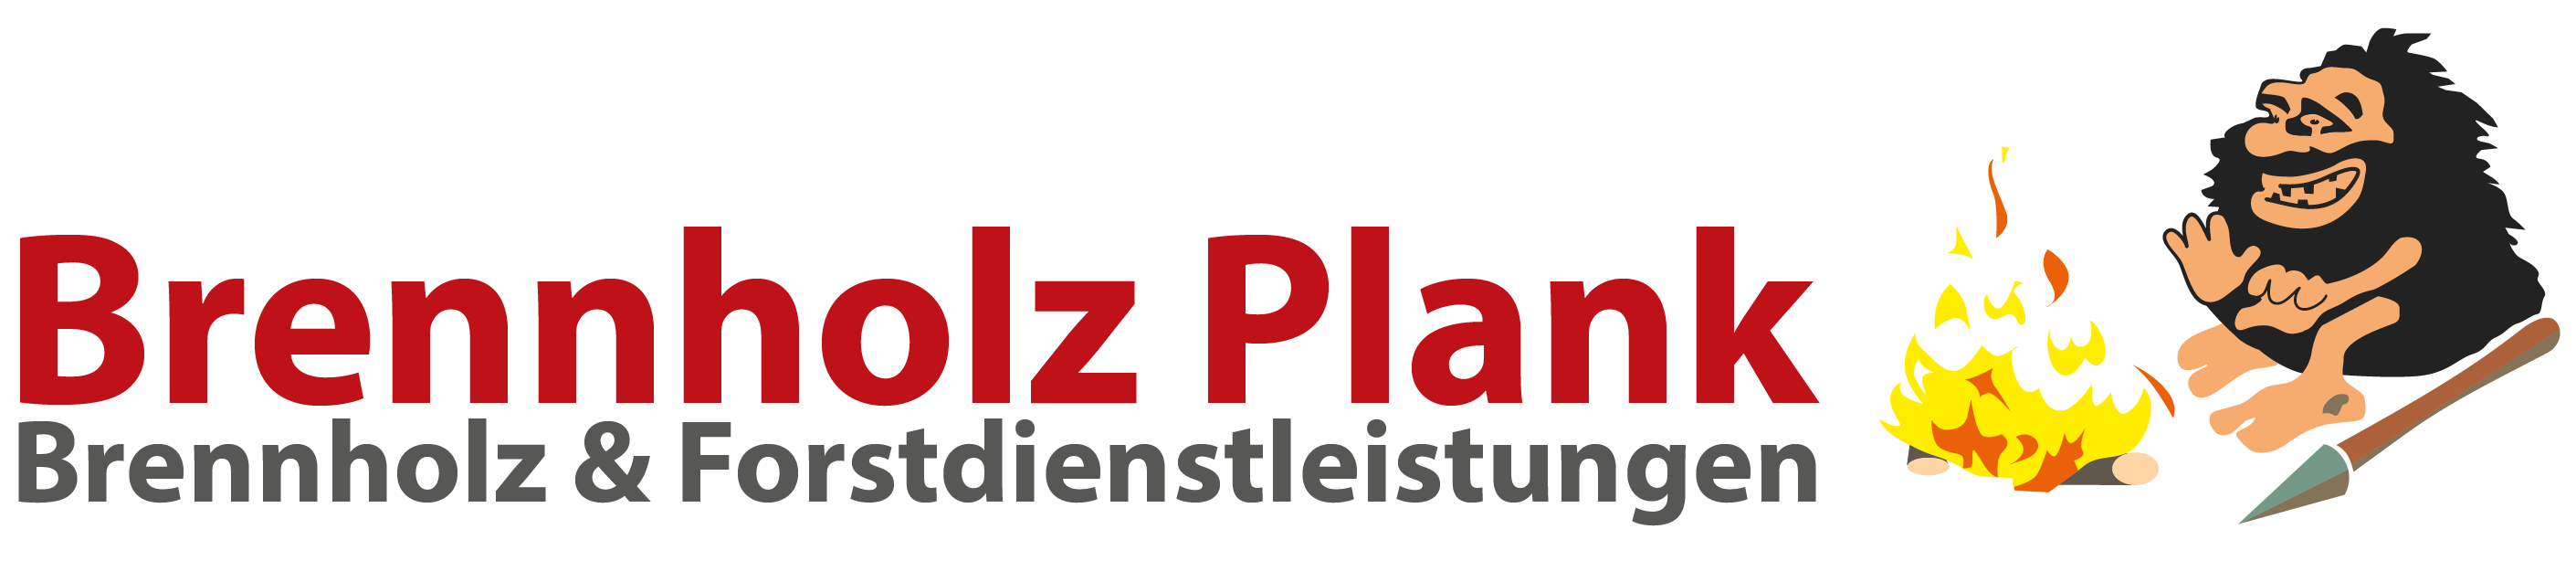 Brennholz-plank Logo